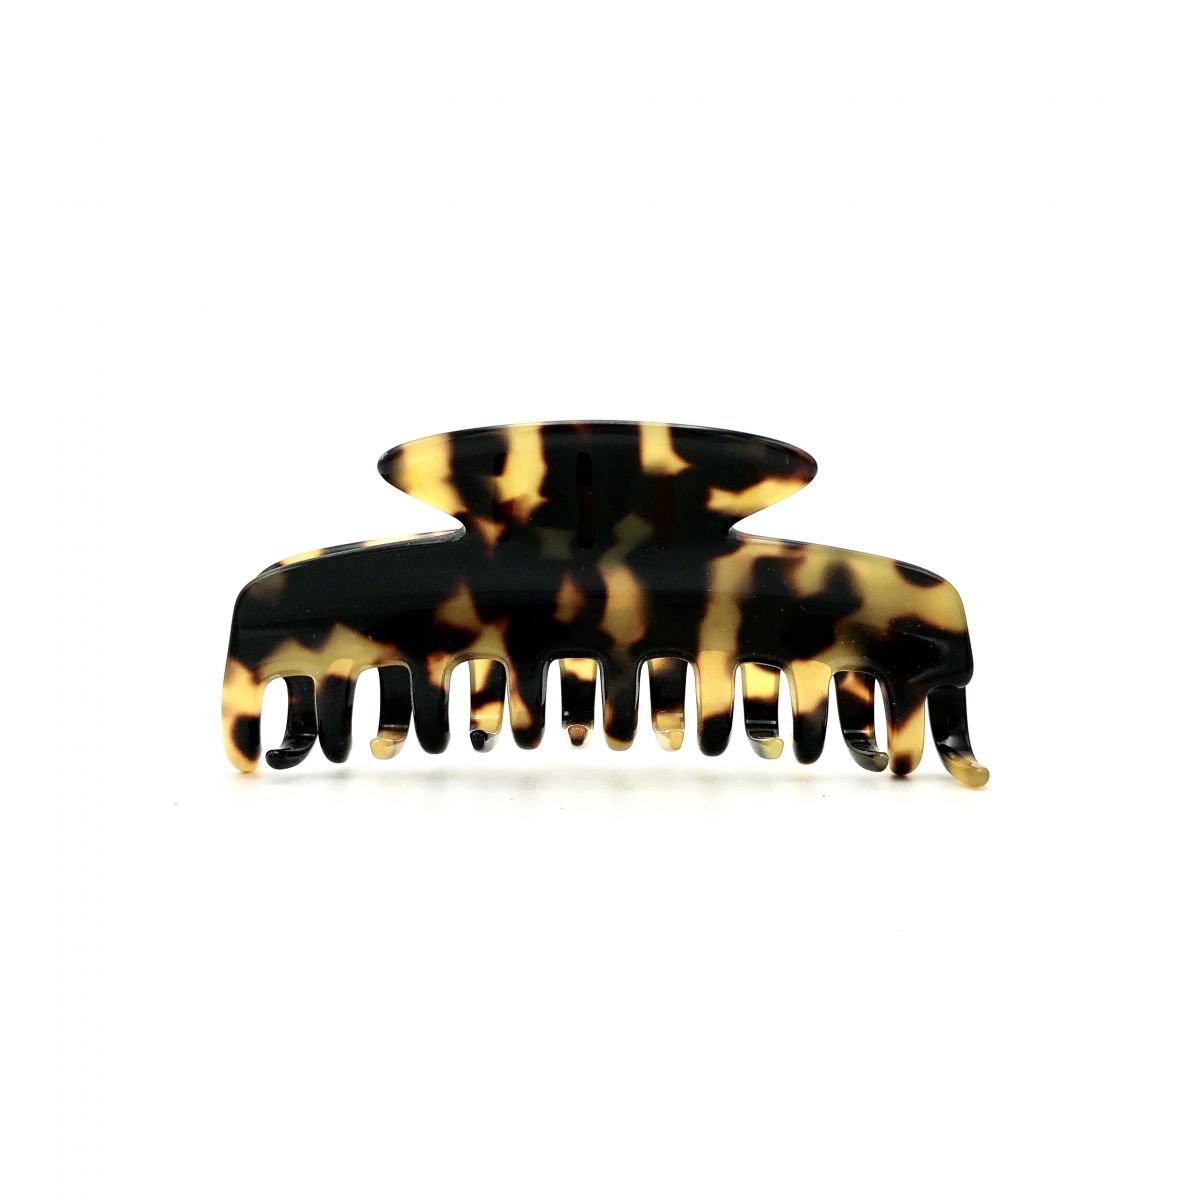 Haarklammer schwarz/honig - eng, klein - 8 cm